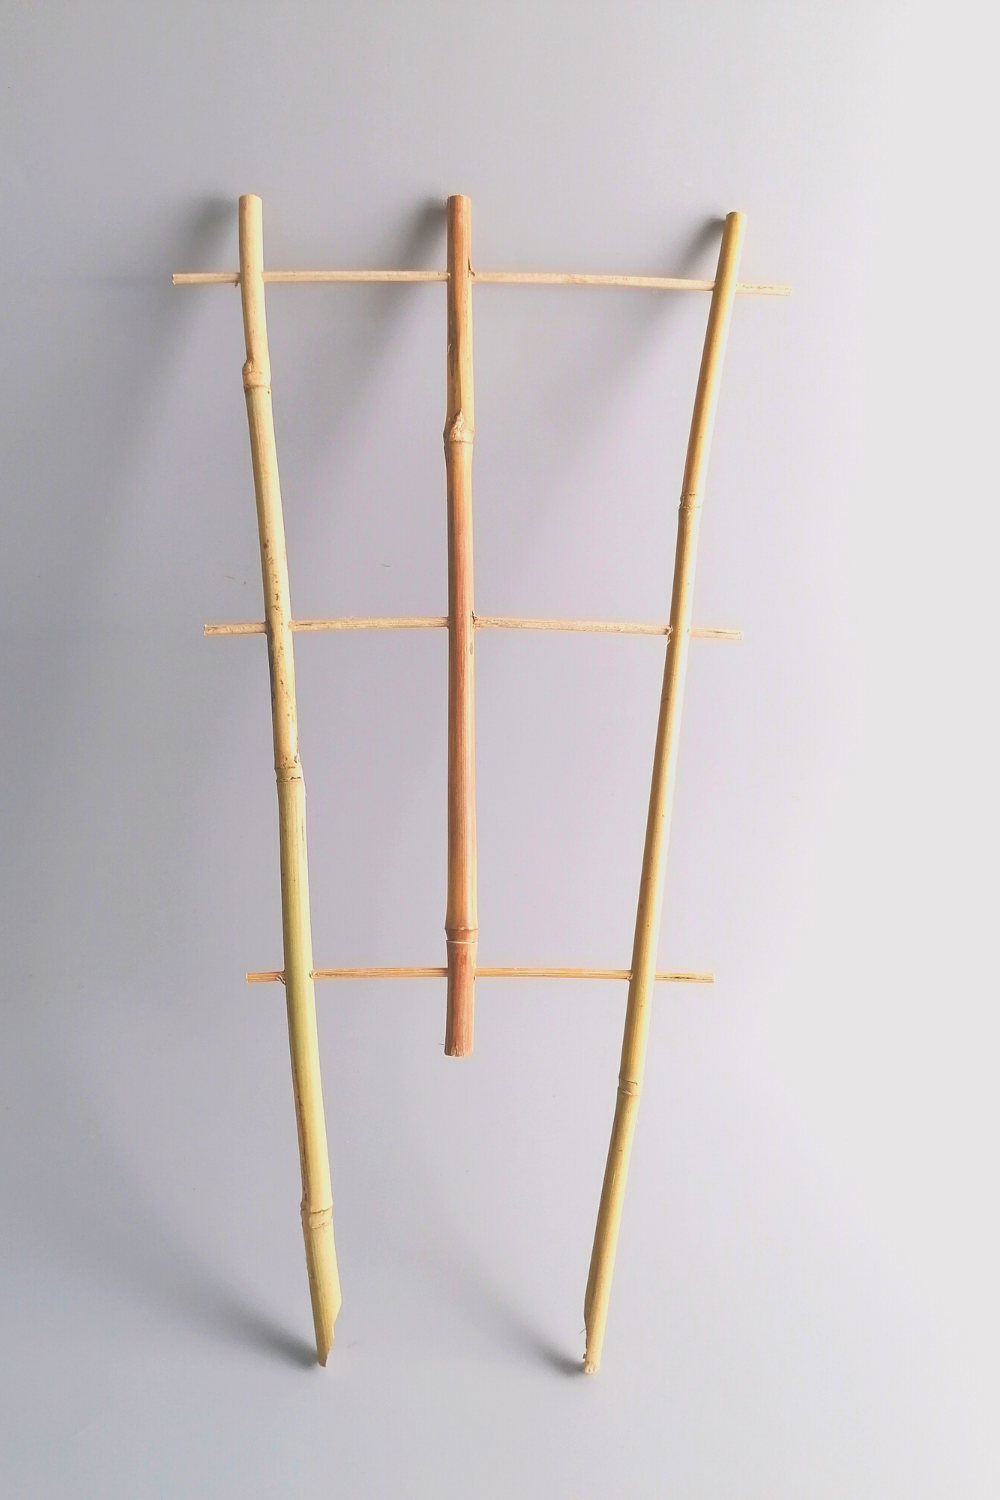 3 supports d'escalade en bambou 45 cm